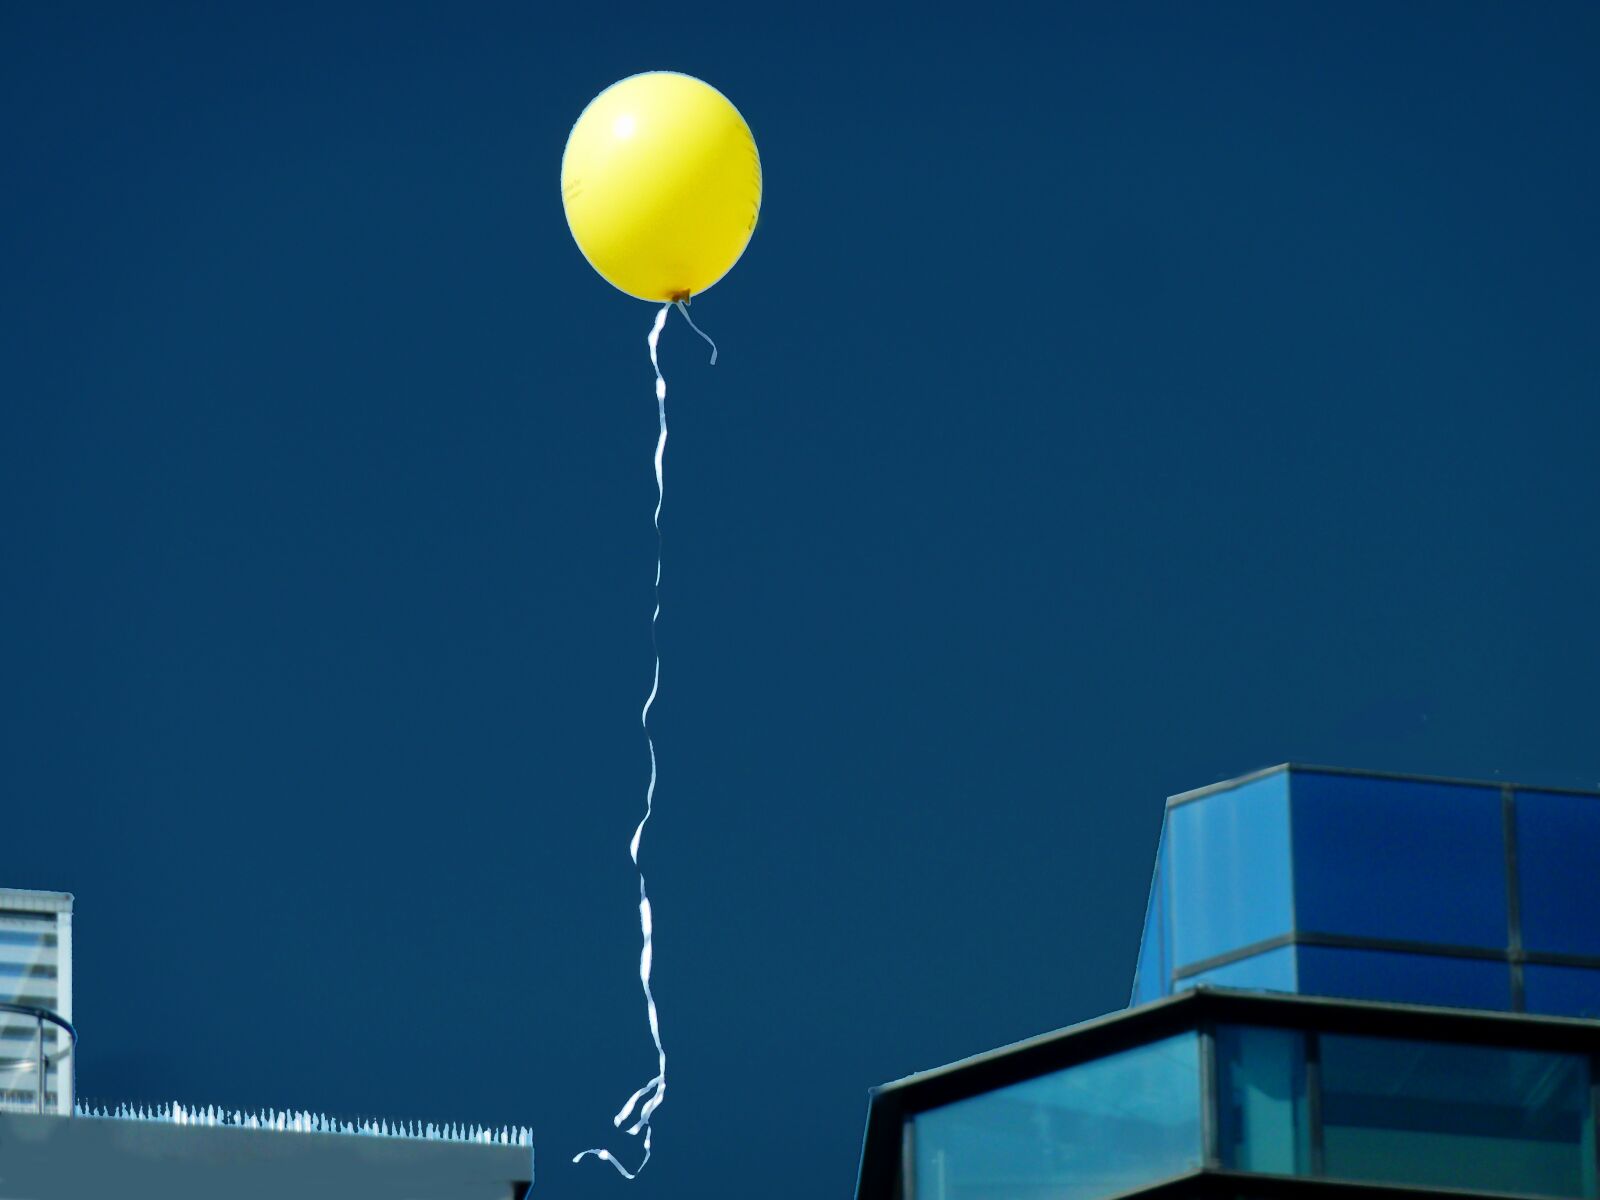 Panasonic DMC-TZ7 sample photo. Balloon, wind, balloons photography